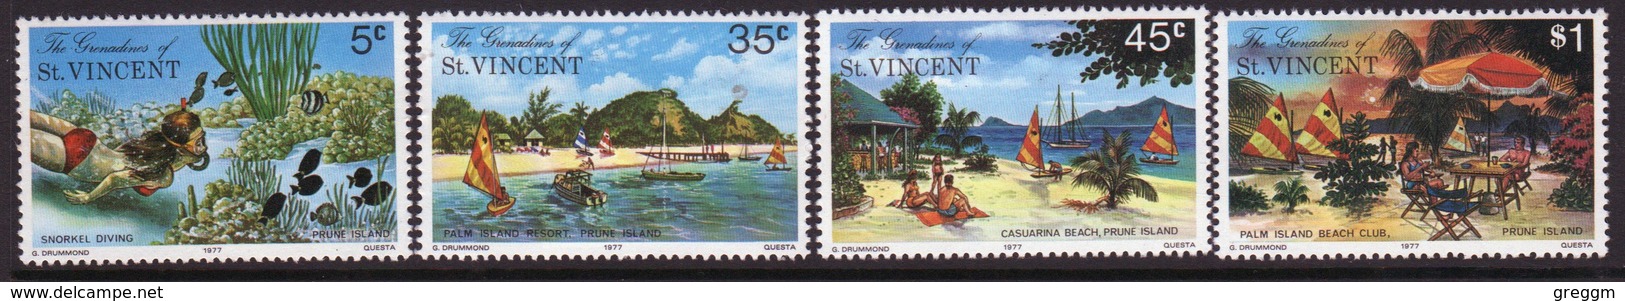 St.Vincent & Grenadines 1977 Set Of Stamps Commemorating Prune Island. - St.Vincent & Grenadines